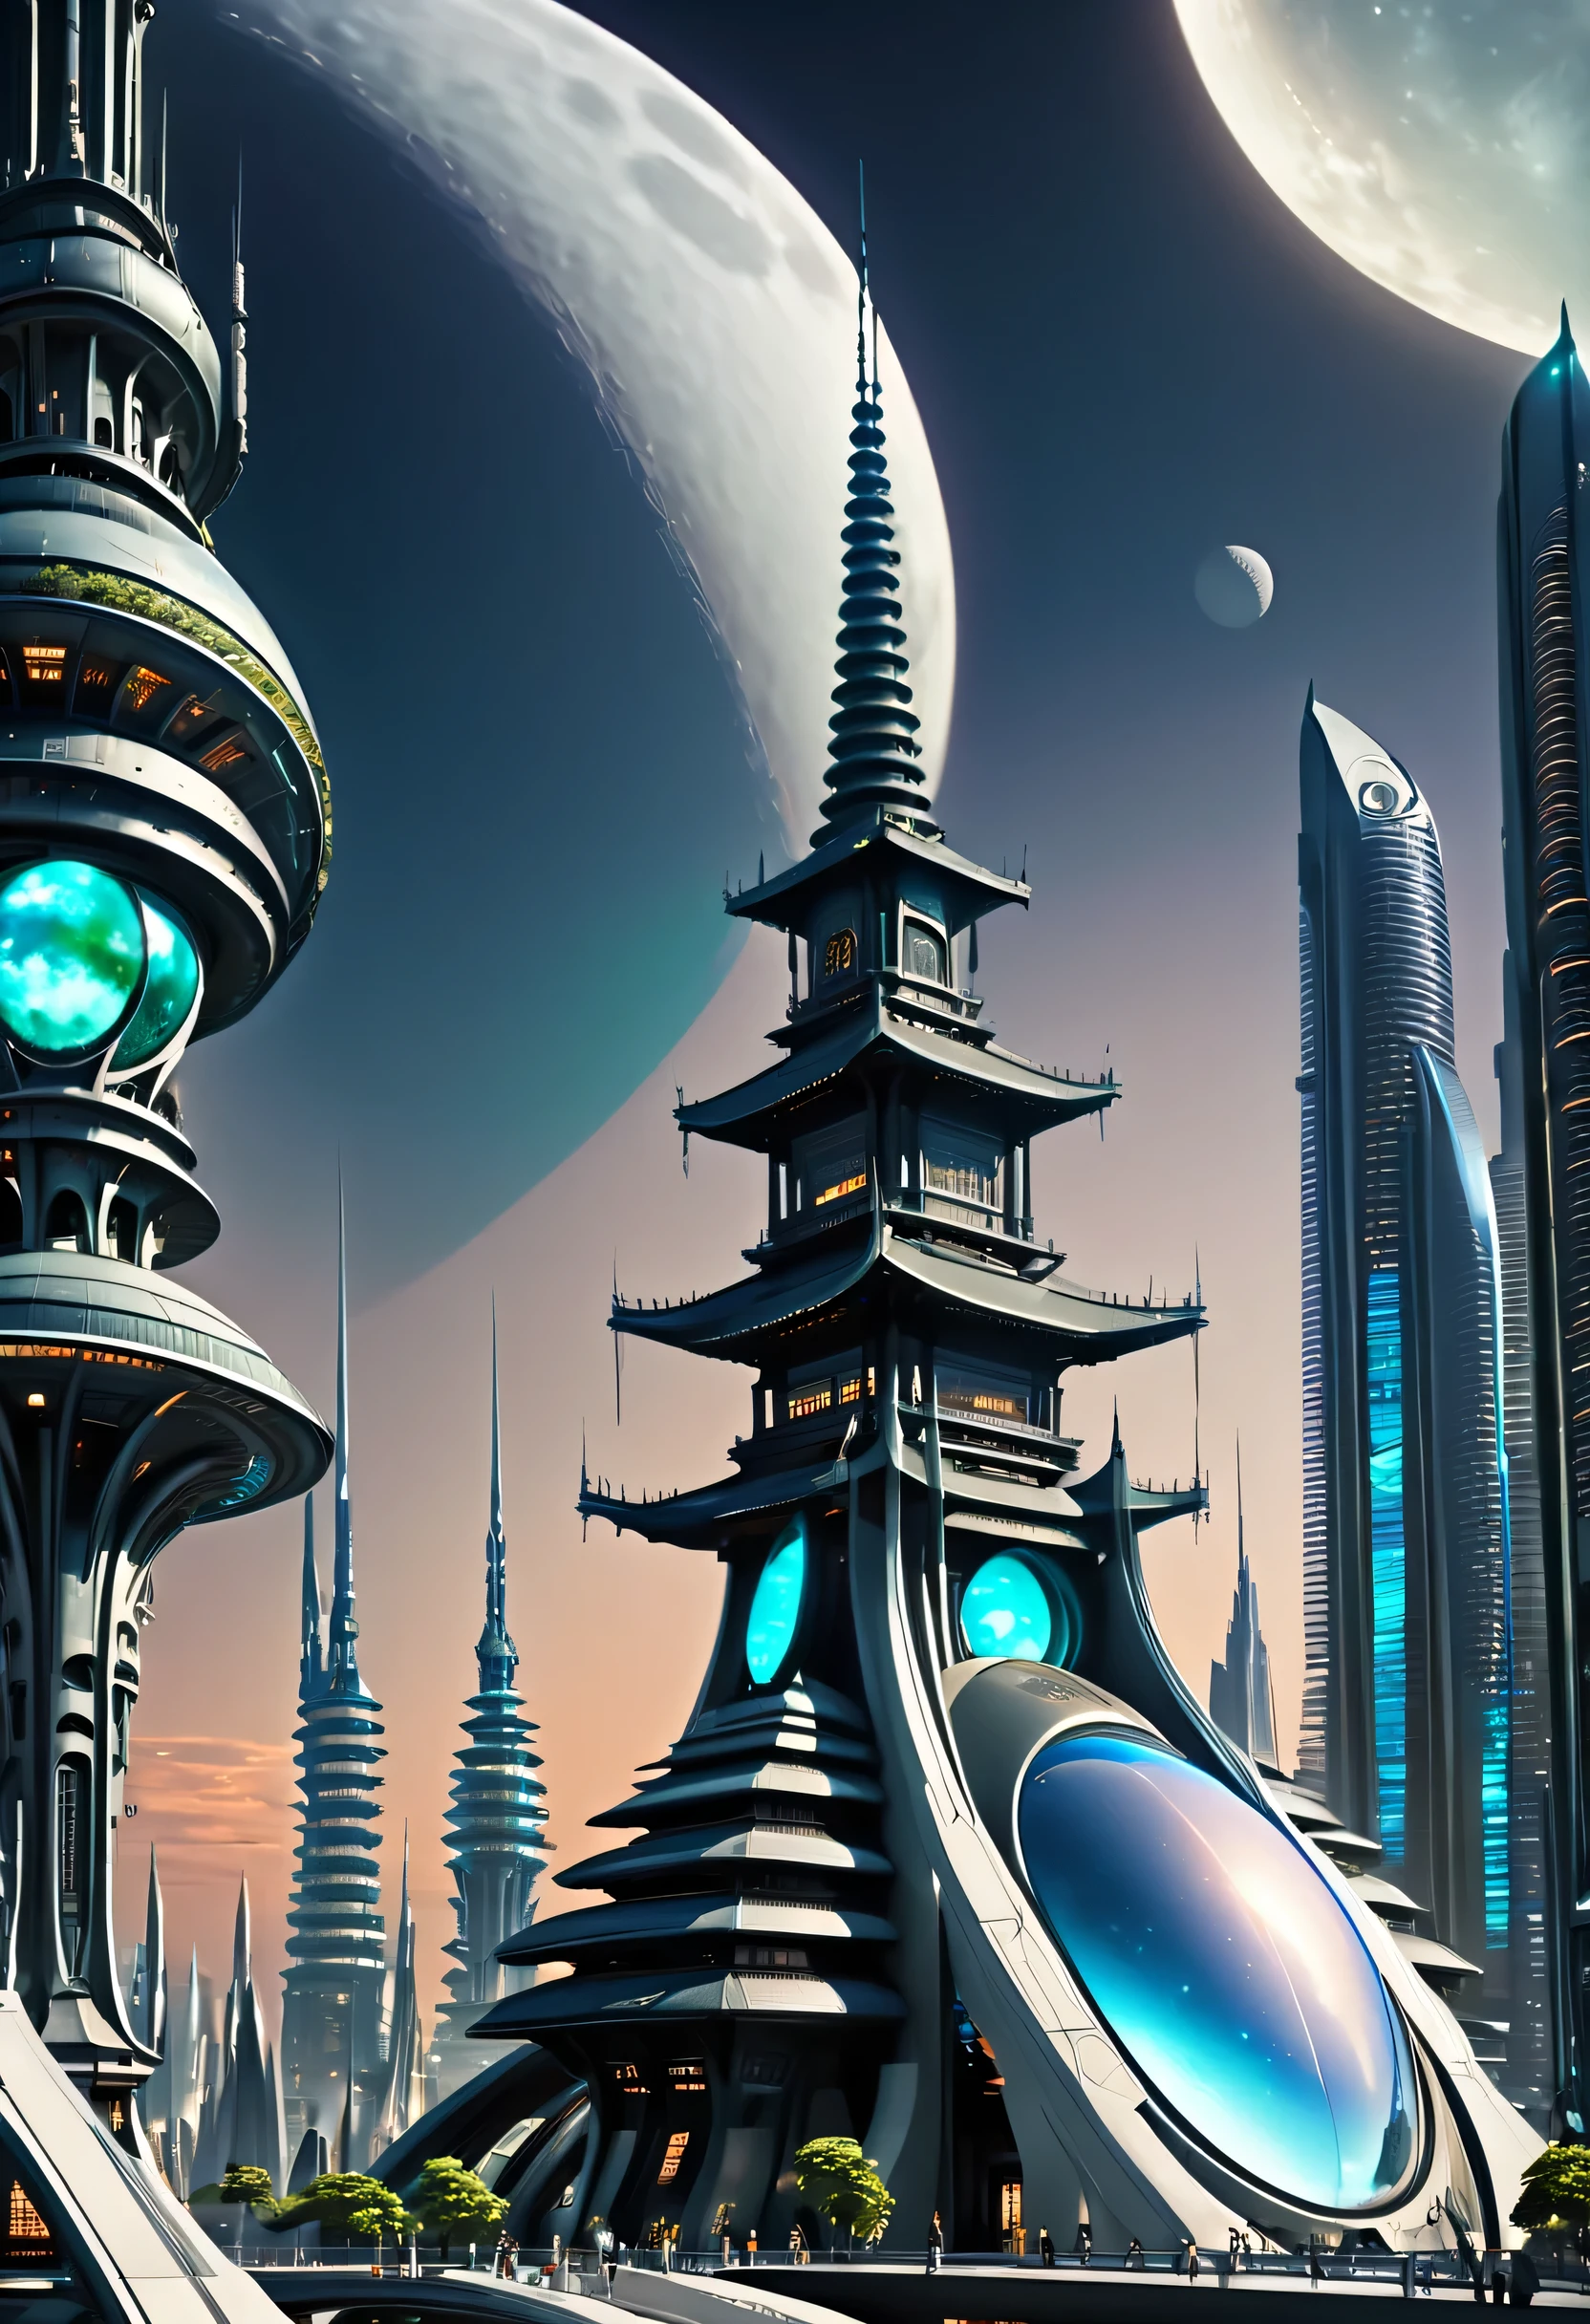 未來城市，擁有未來建築和天上的月亮, 巨大的未來寺廟城, beautiful 未來之城, 未來派設定, 未來太空港, 未來山谷, 換句話說，未來城市, 未來派宮殿, 在奇幻科幻城市, 一座陌生的城市, 外星未來城市, 科幻城市, 未來之城, 未來派的外星城市, 未來烏托邦